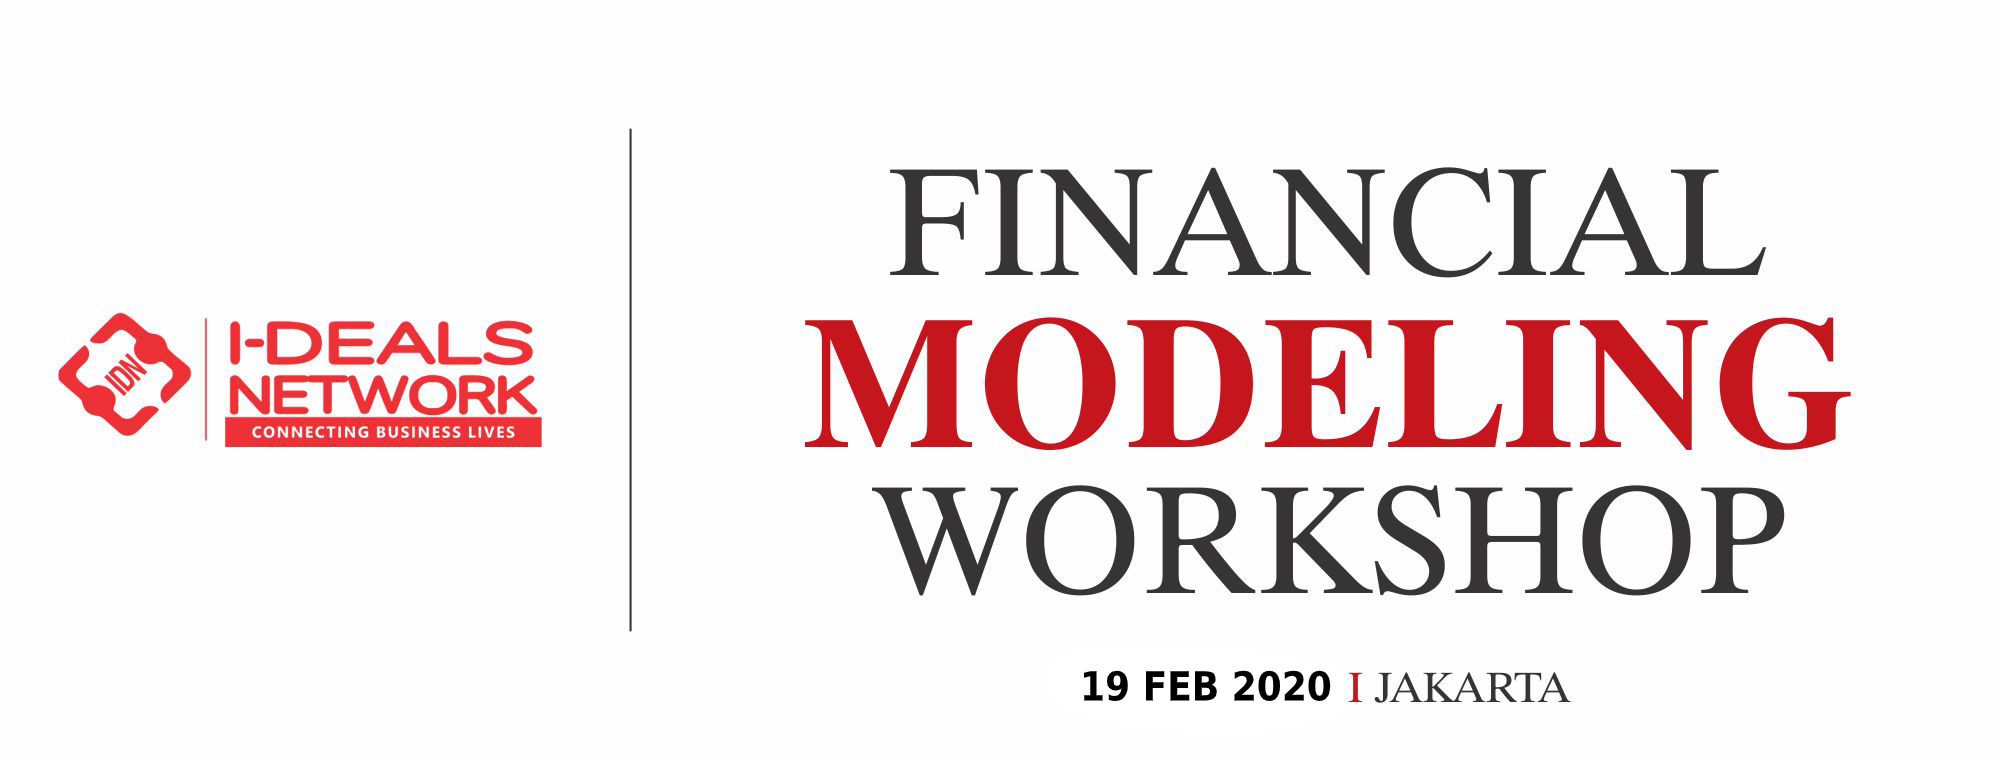 Financial Modeling Workshop